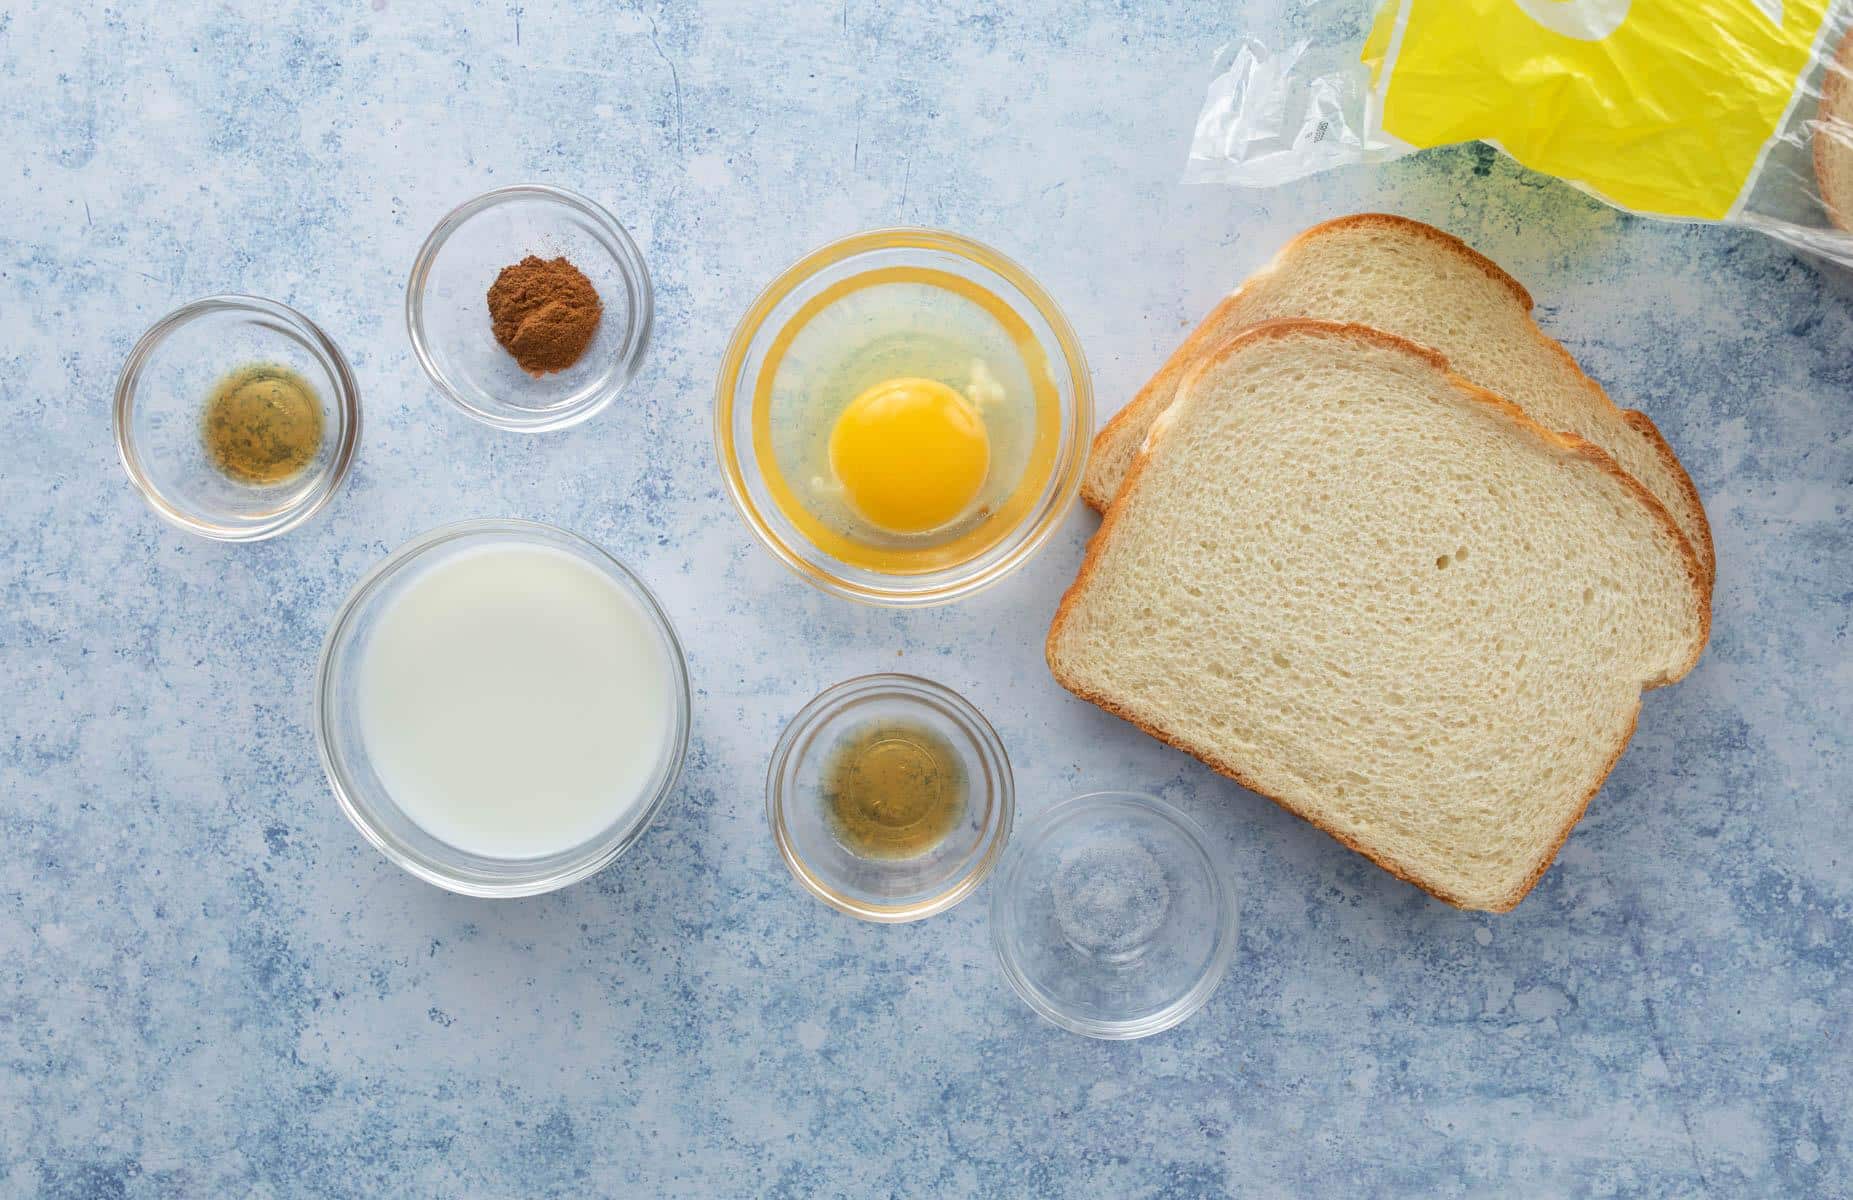 bread, milk, egg, seasonings on blue table